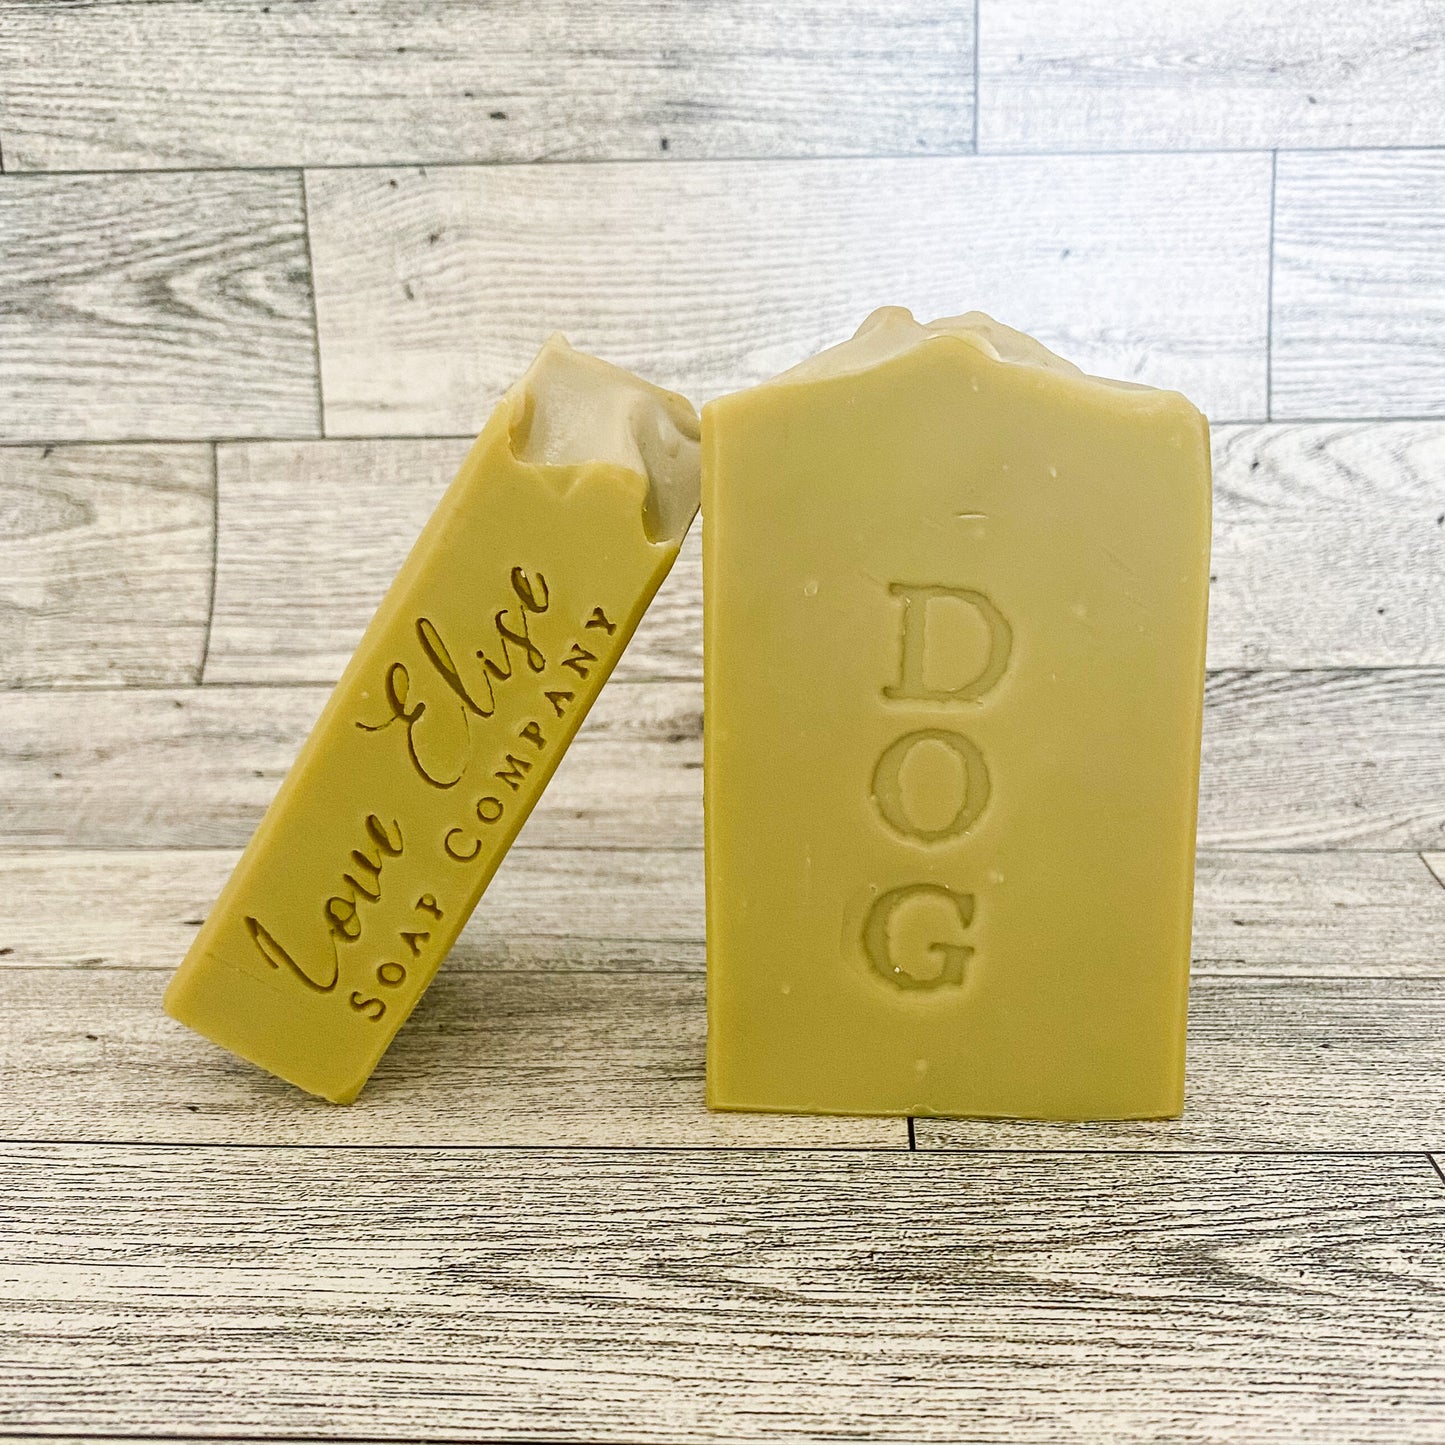 Clean Dog bar soap